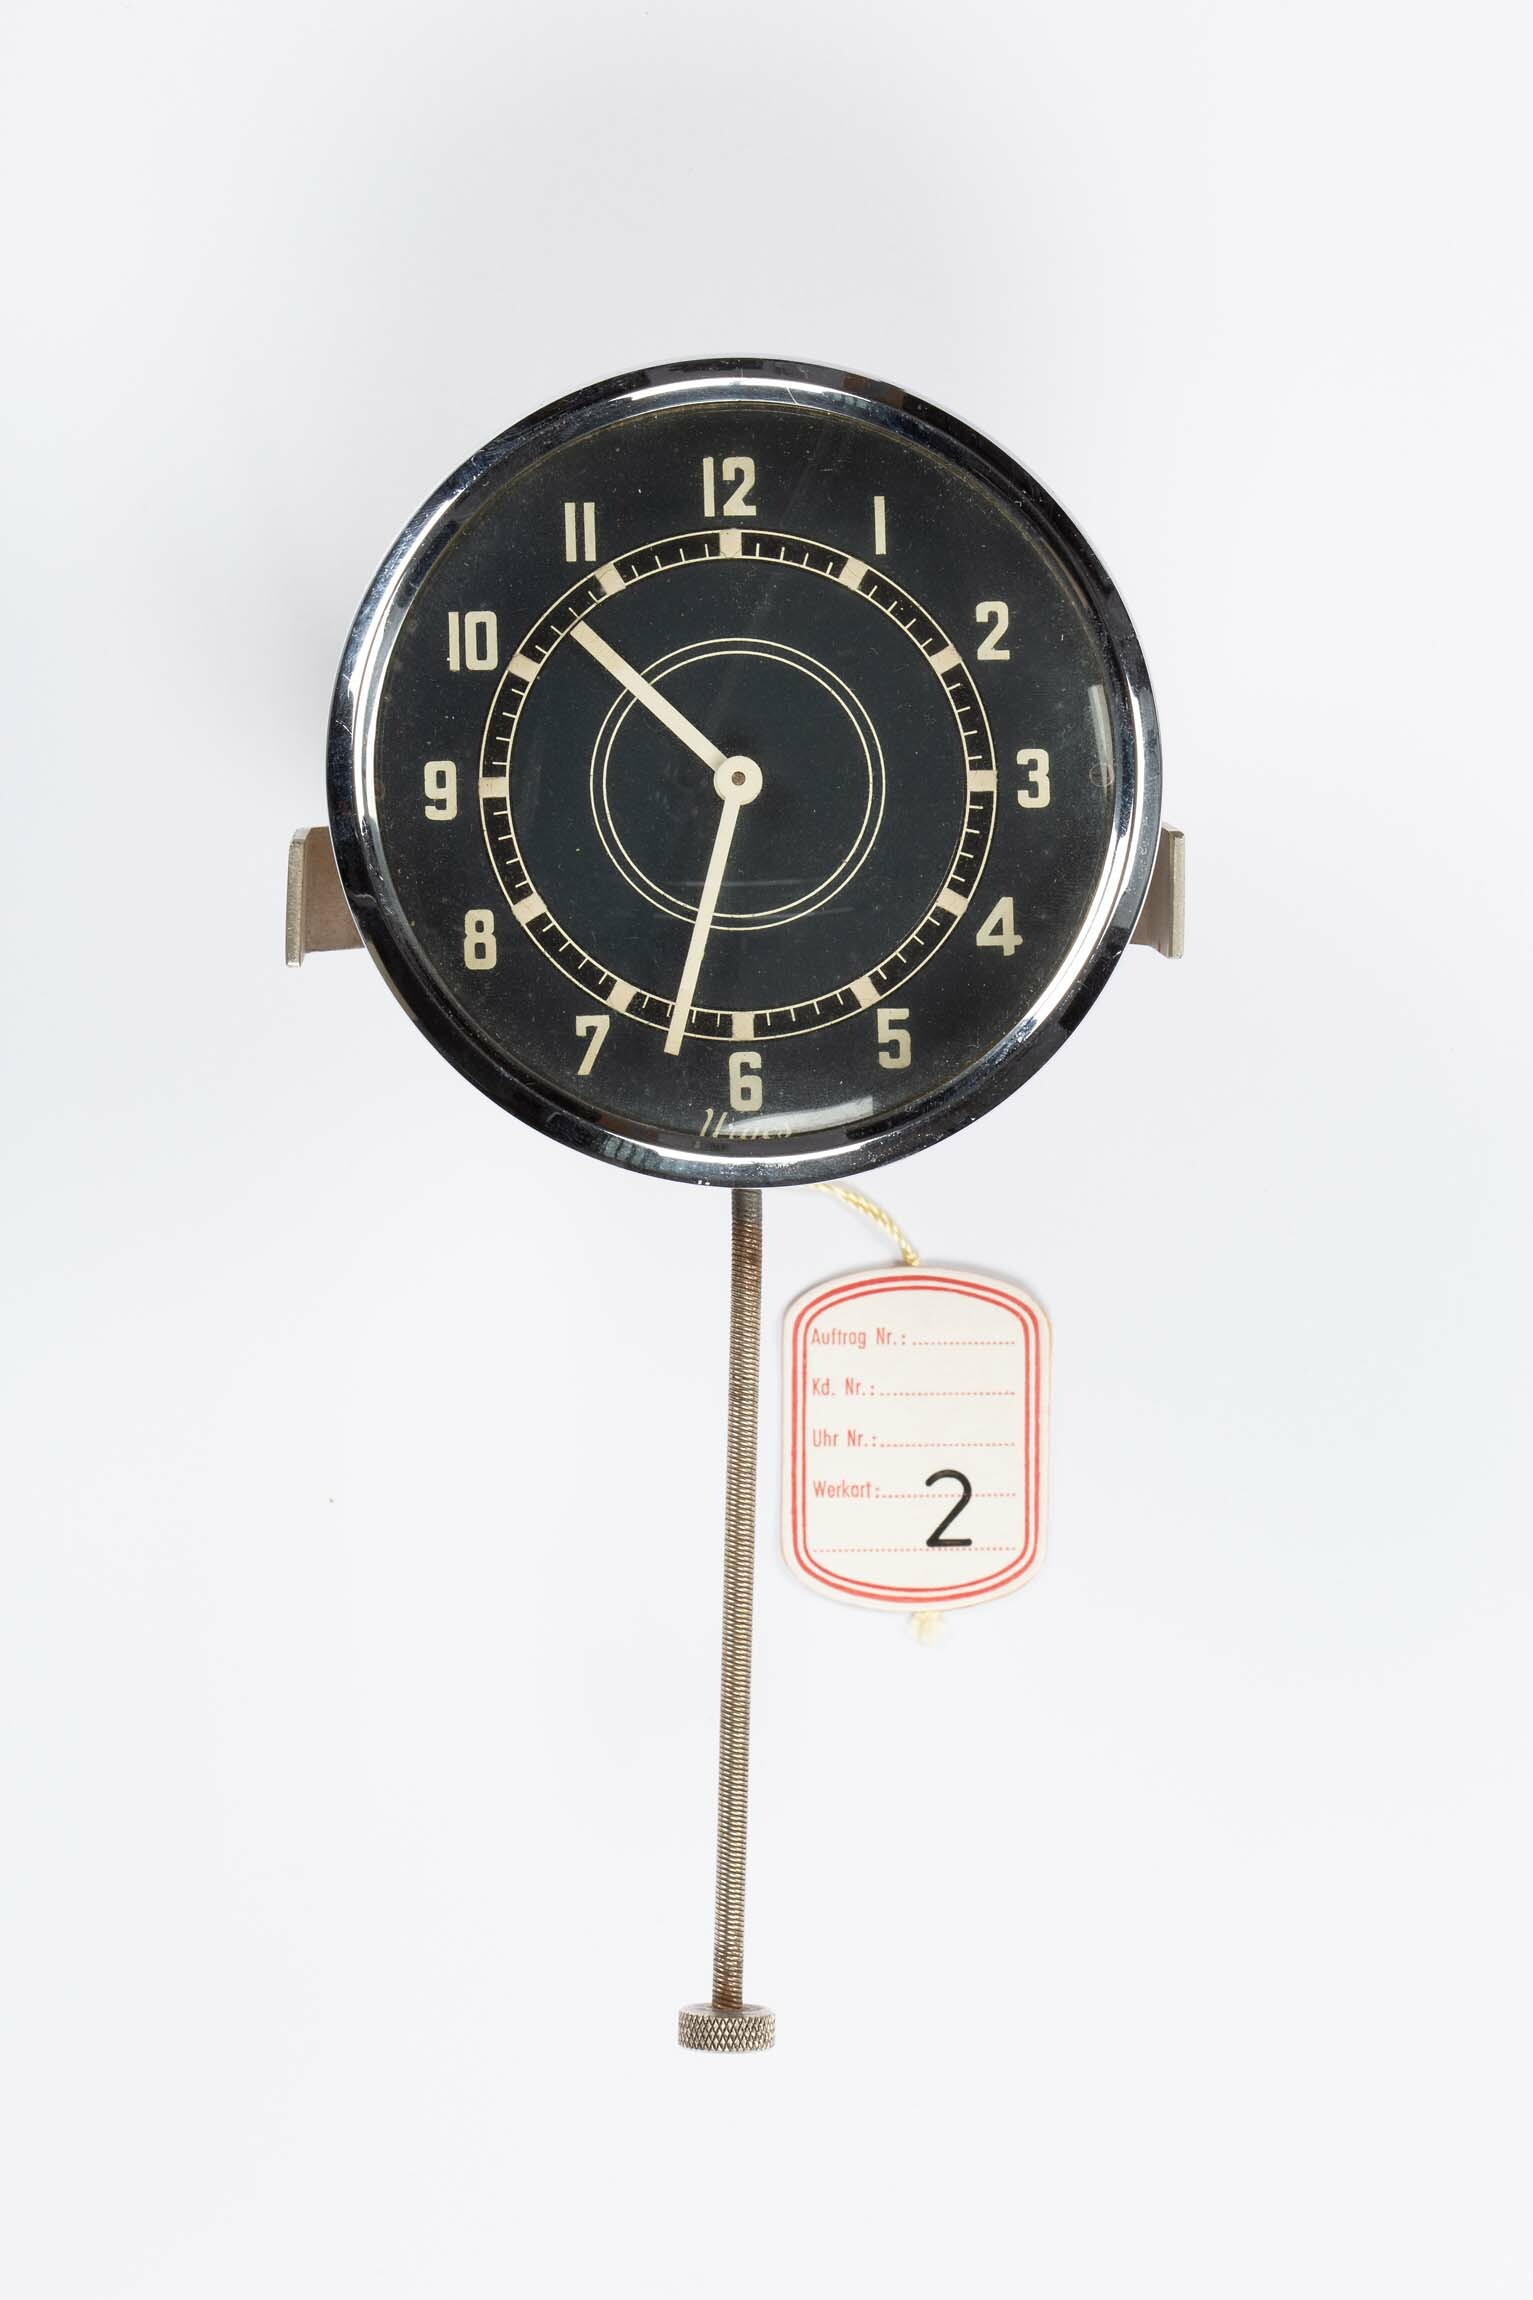 Autouhr, Urgos, Schwenningen, 1937 (Deutsches Uhrenmuseum CC BY-SA)